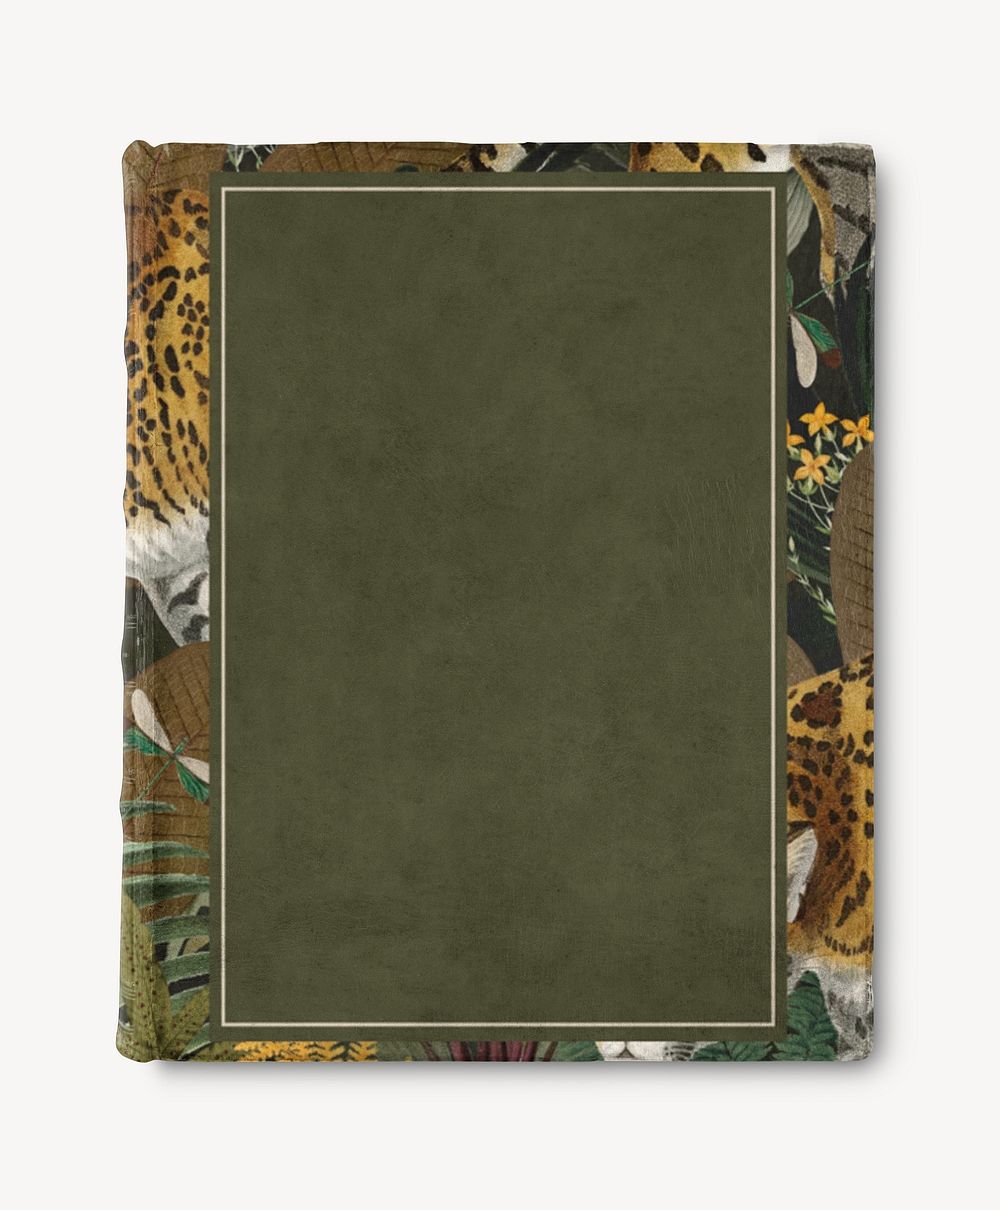 Dark green hard cover book